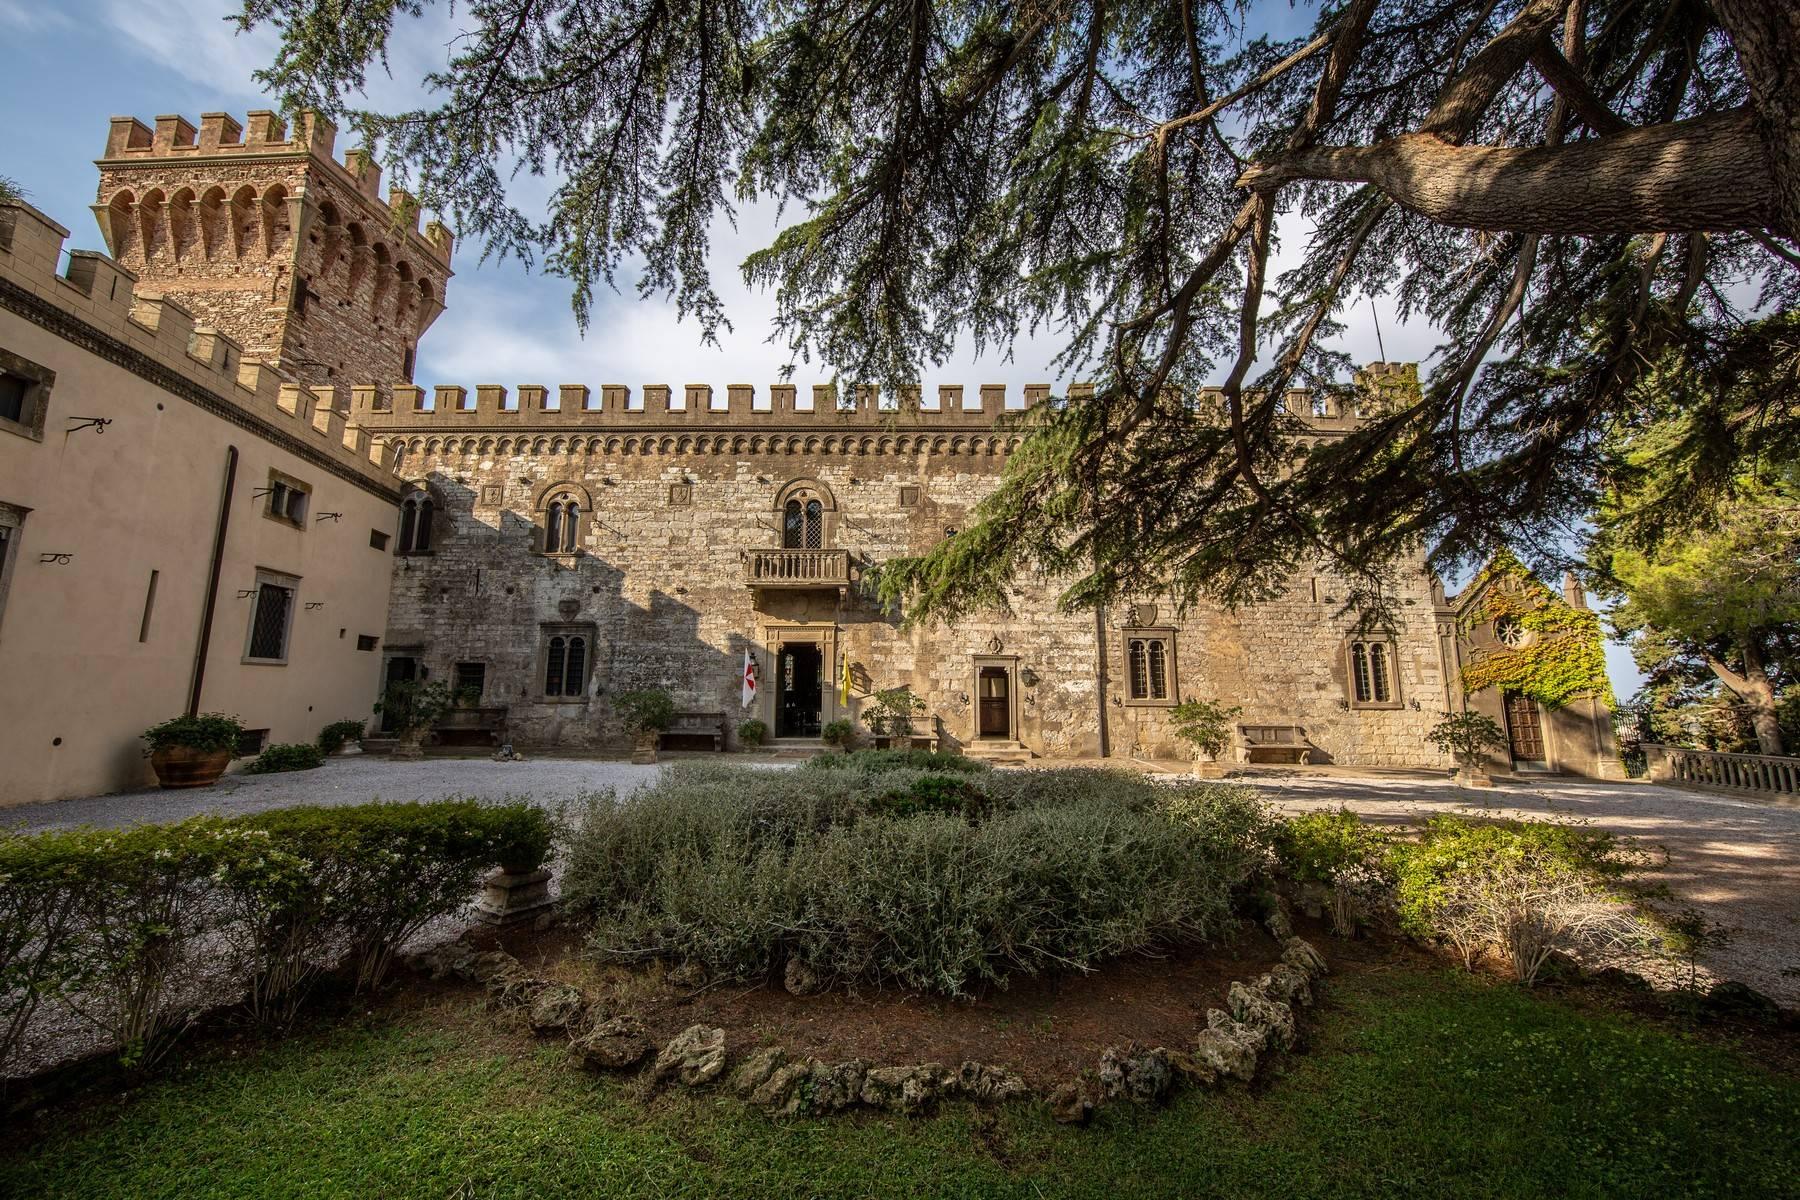 Castello dei Lorena -magnificent castle in the heart of Tuscany - 3